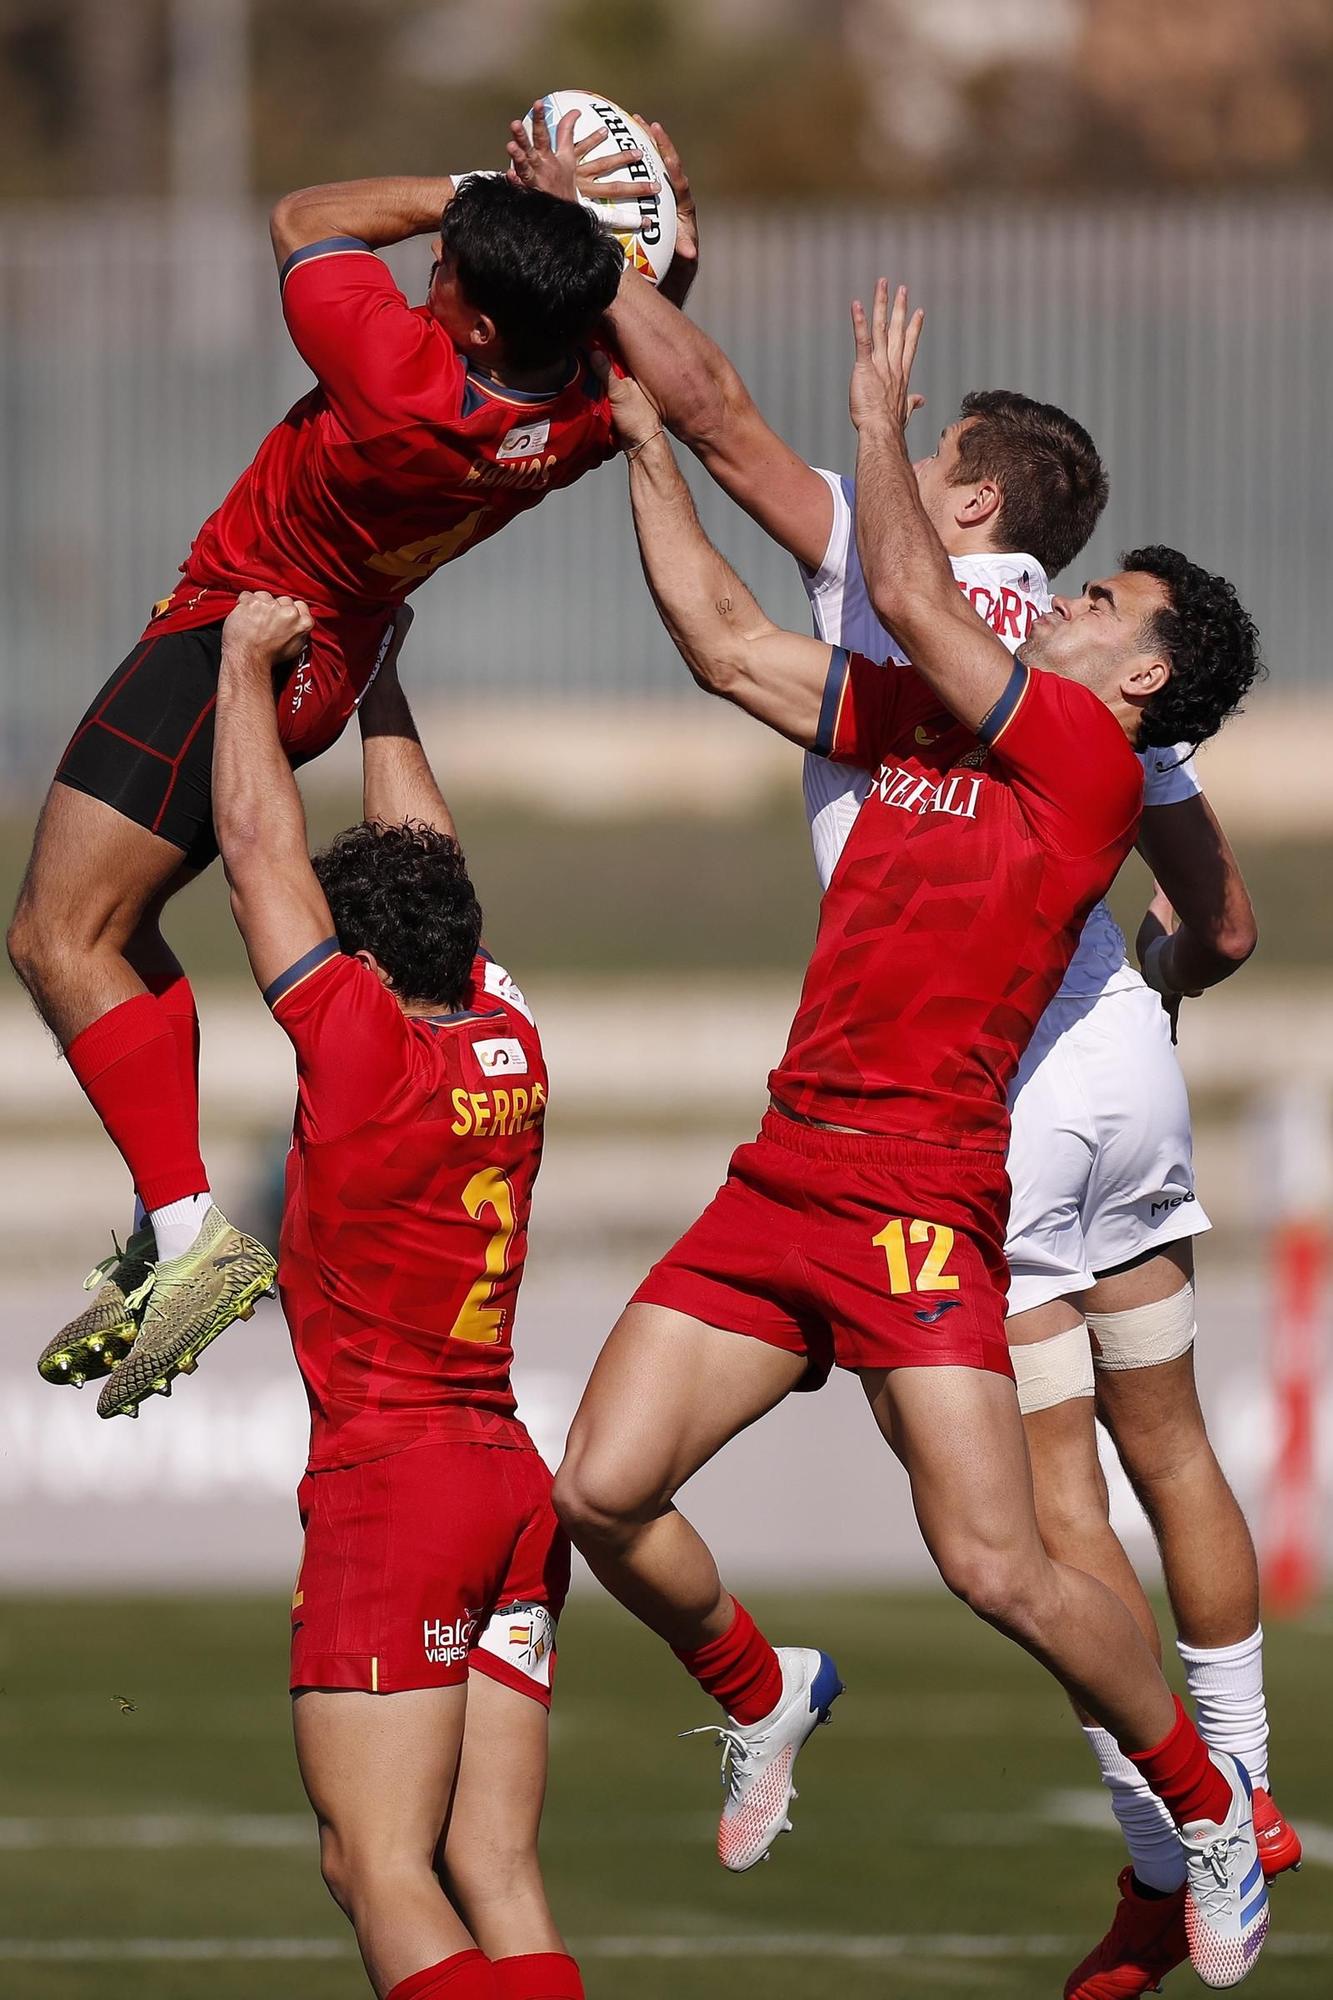 ESPAÑA-EEUU en la primera jornada de las Series Mundiales HSBC de rugby 7 en Málaga